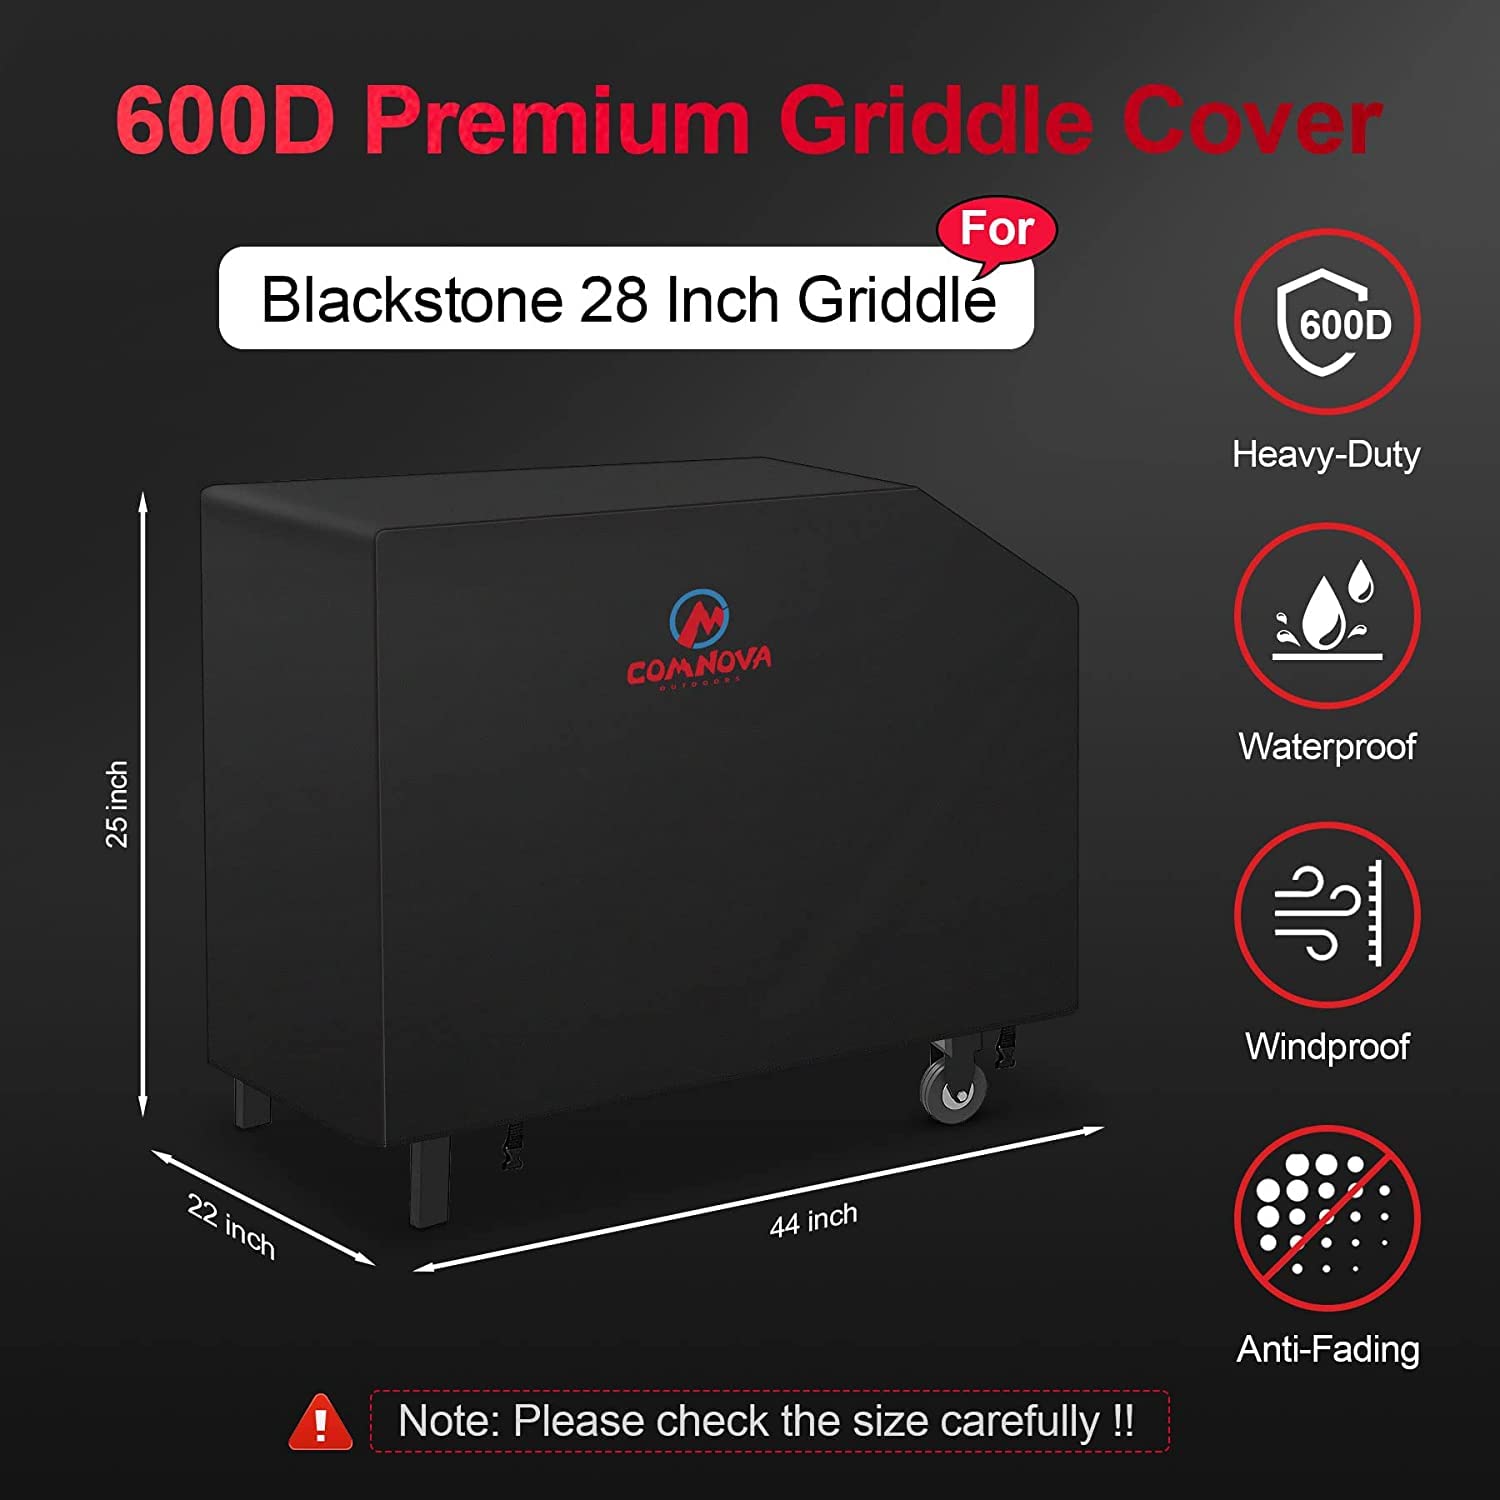 M COMNOVA OUTDOORS comnova griddle cover for Blackstone griddle 28 Inch - 600D Flat Top griddle cover for Blackstone 28 Single Shelf griddle Heavy 